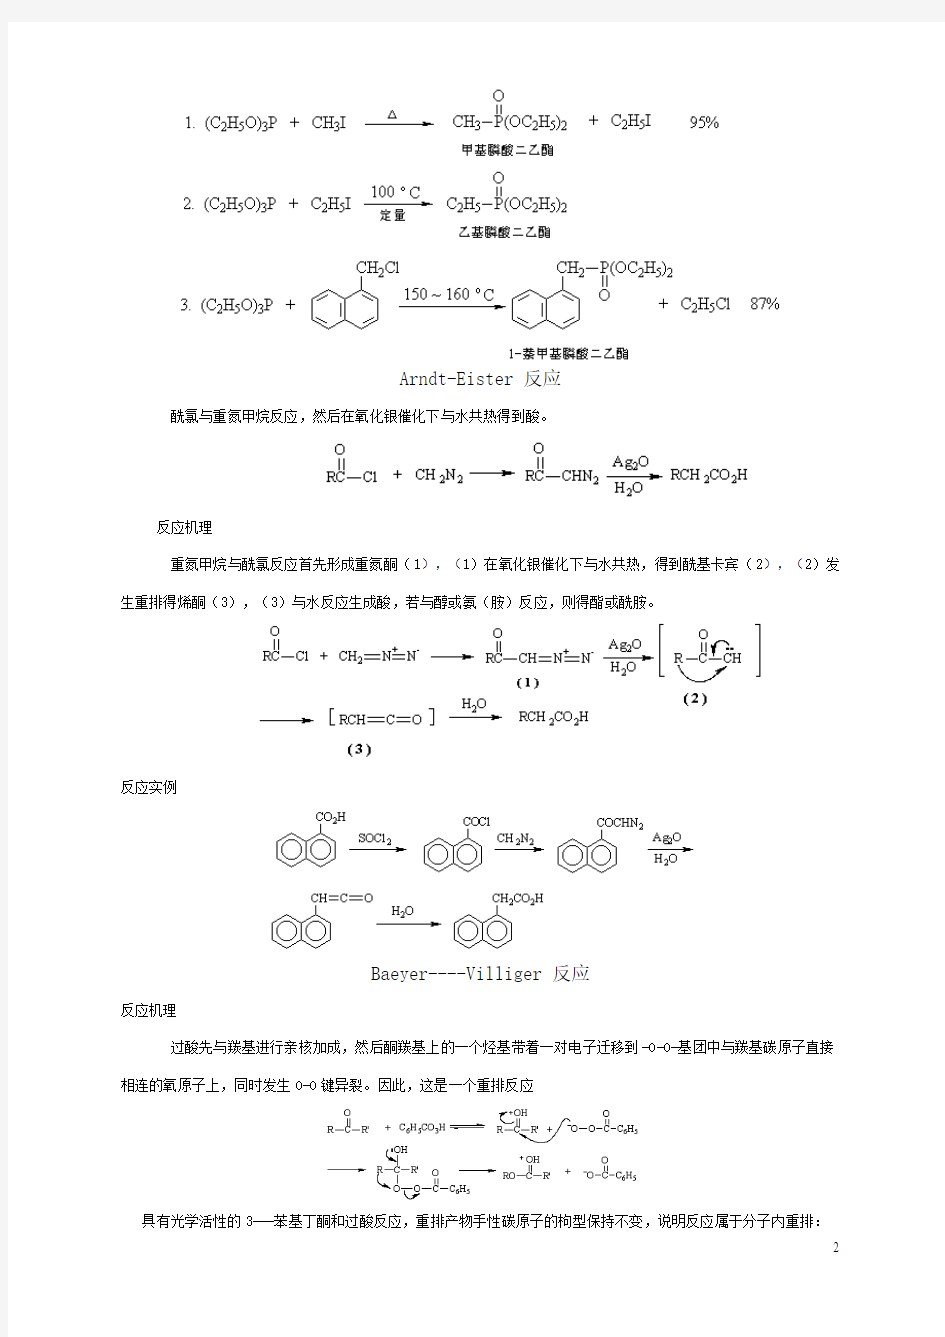 详细有机化学常见反应机理分析